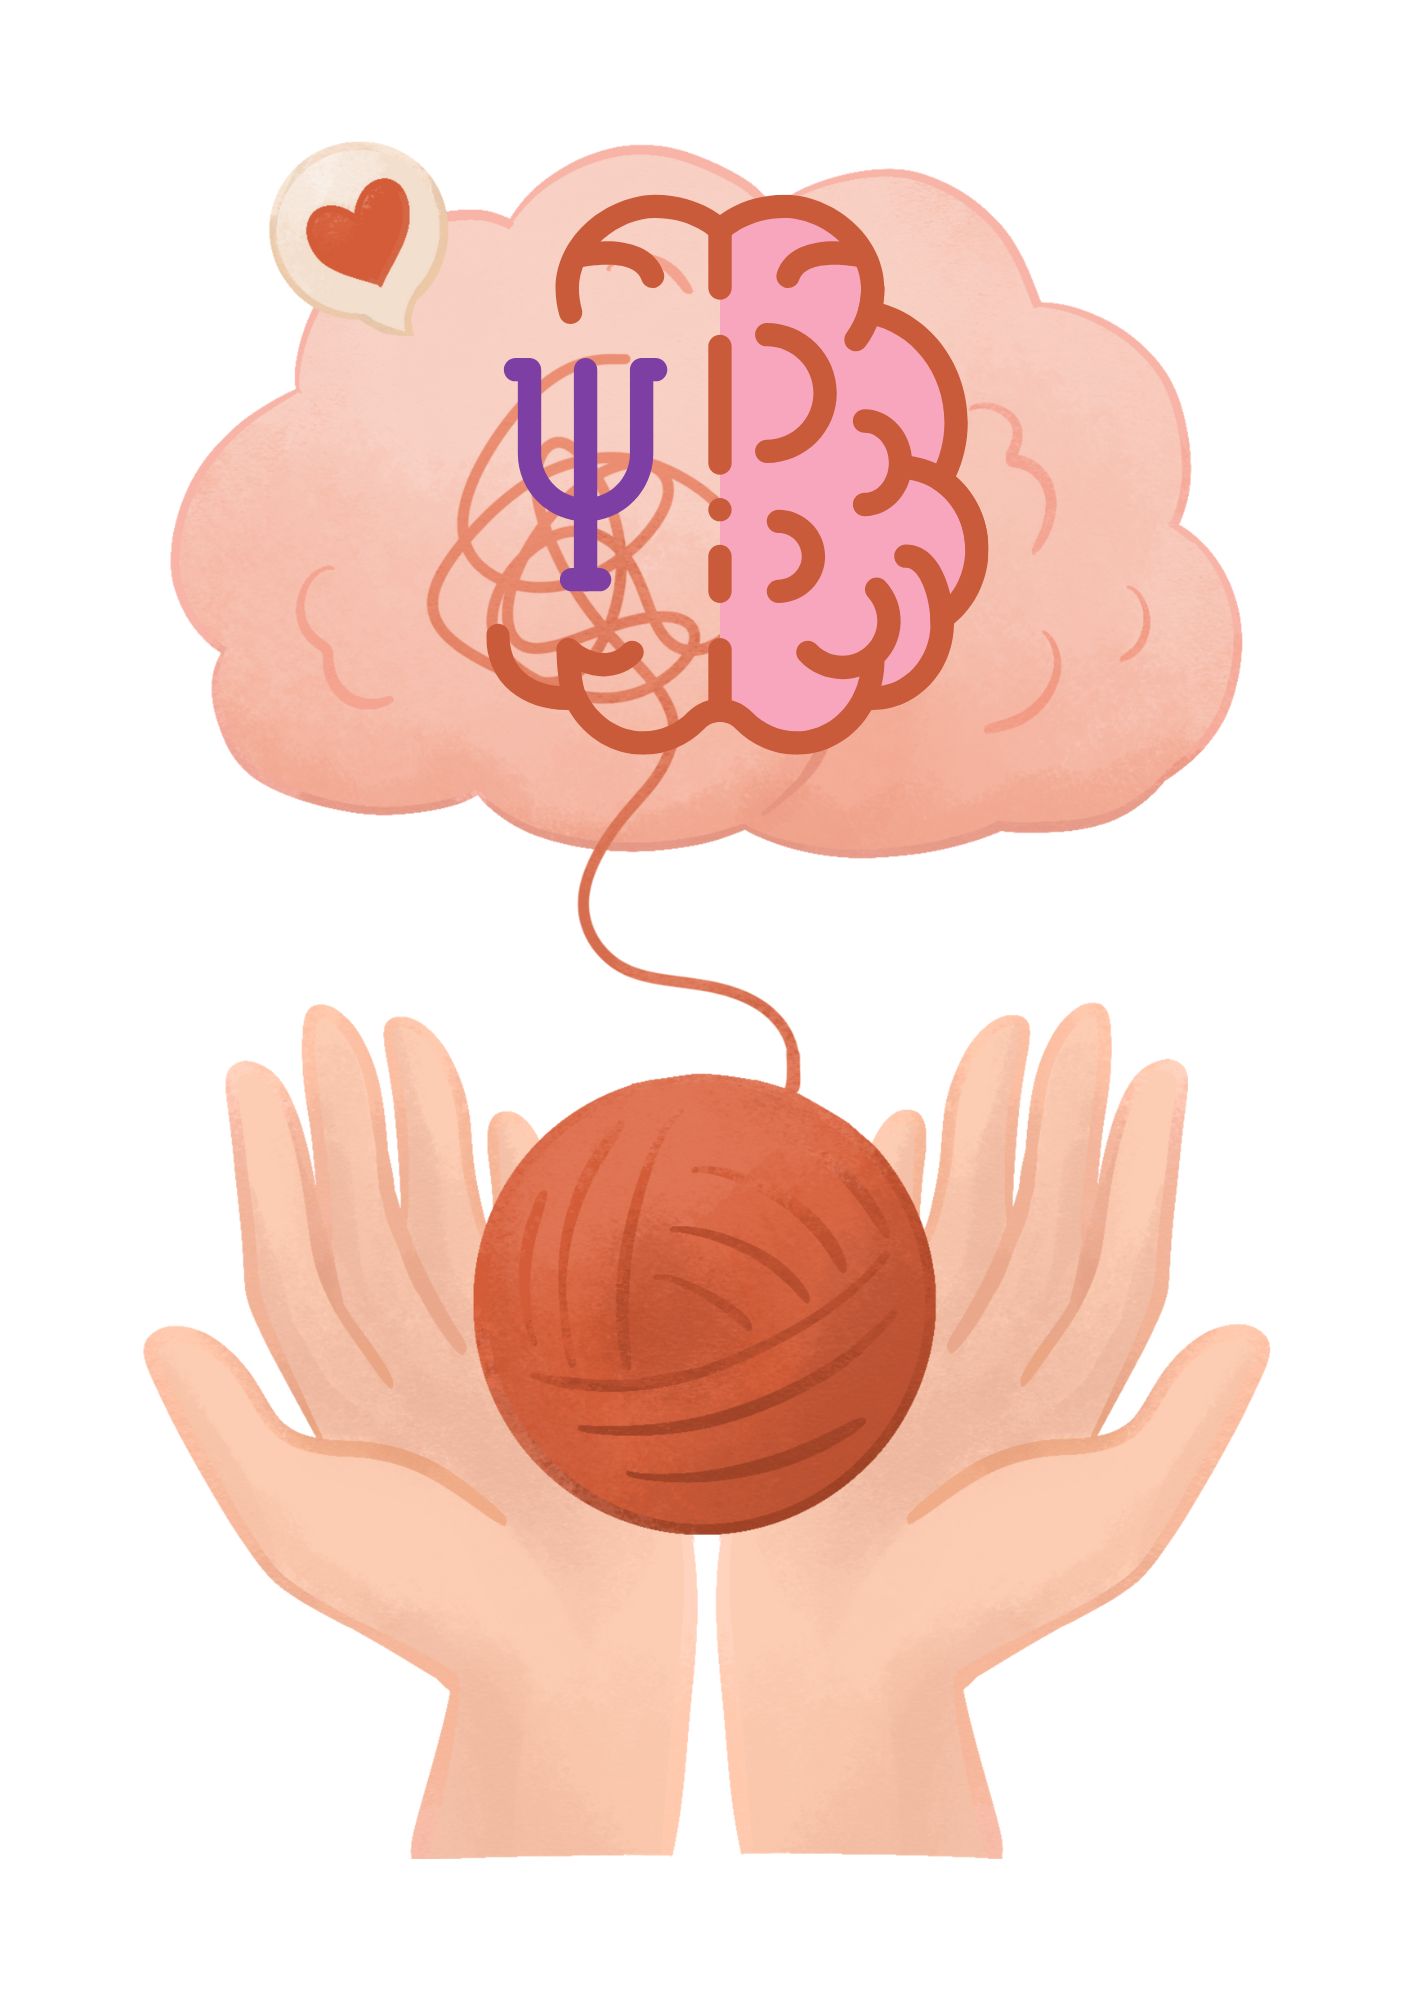 En la imagen se puede apreciar unas manos abiertas que sostienen un ovillo de lana, cuya pita forma un cerebro. La mitad del cerbro tiene una apariencia normal, mientras que la otra mitad tiene, rayones que simbolizan rumiaciones cognitivas,  y a la vez contiene un signo de psicología.